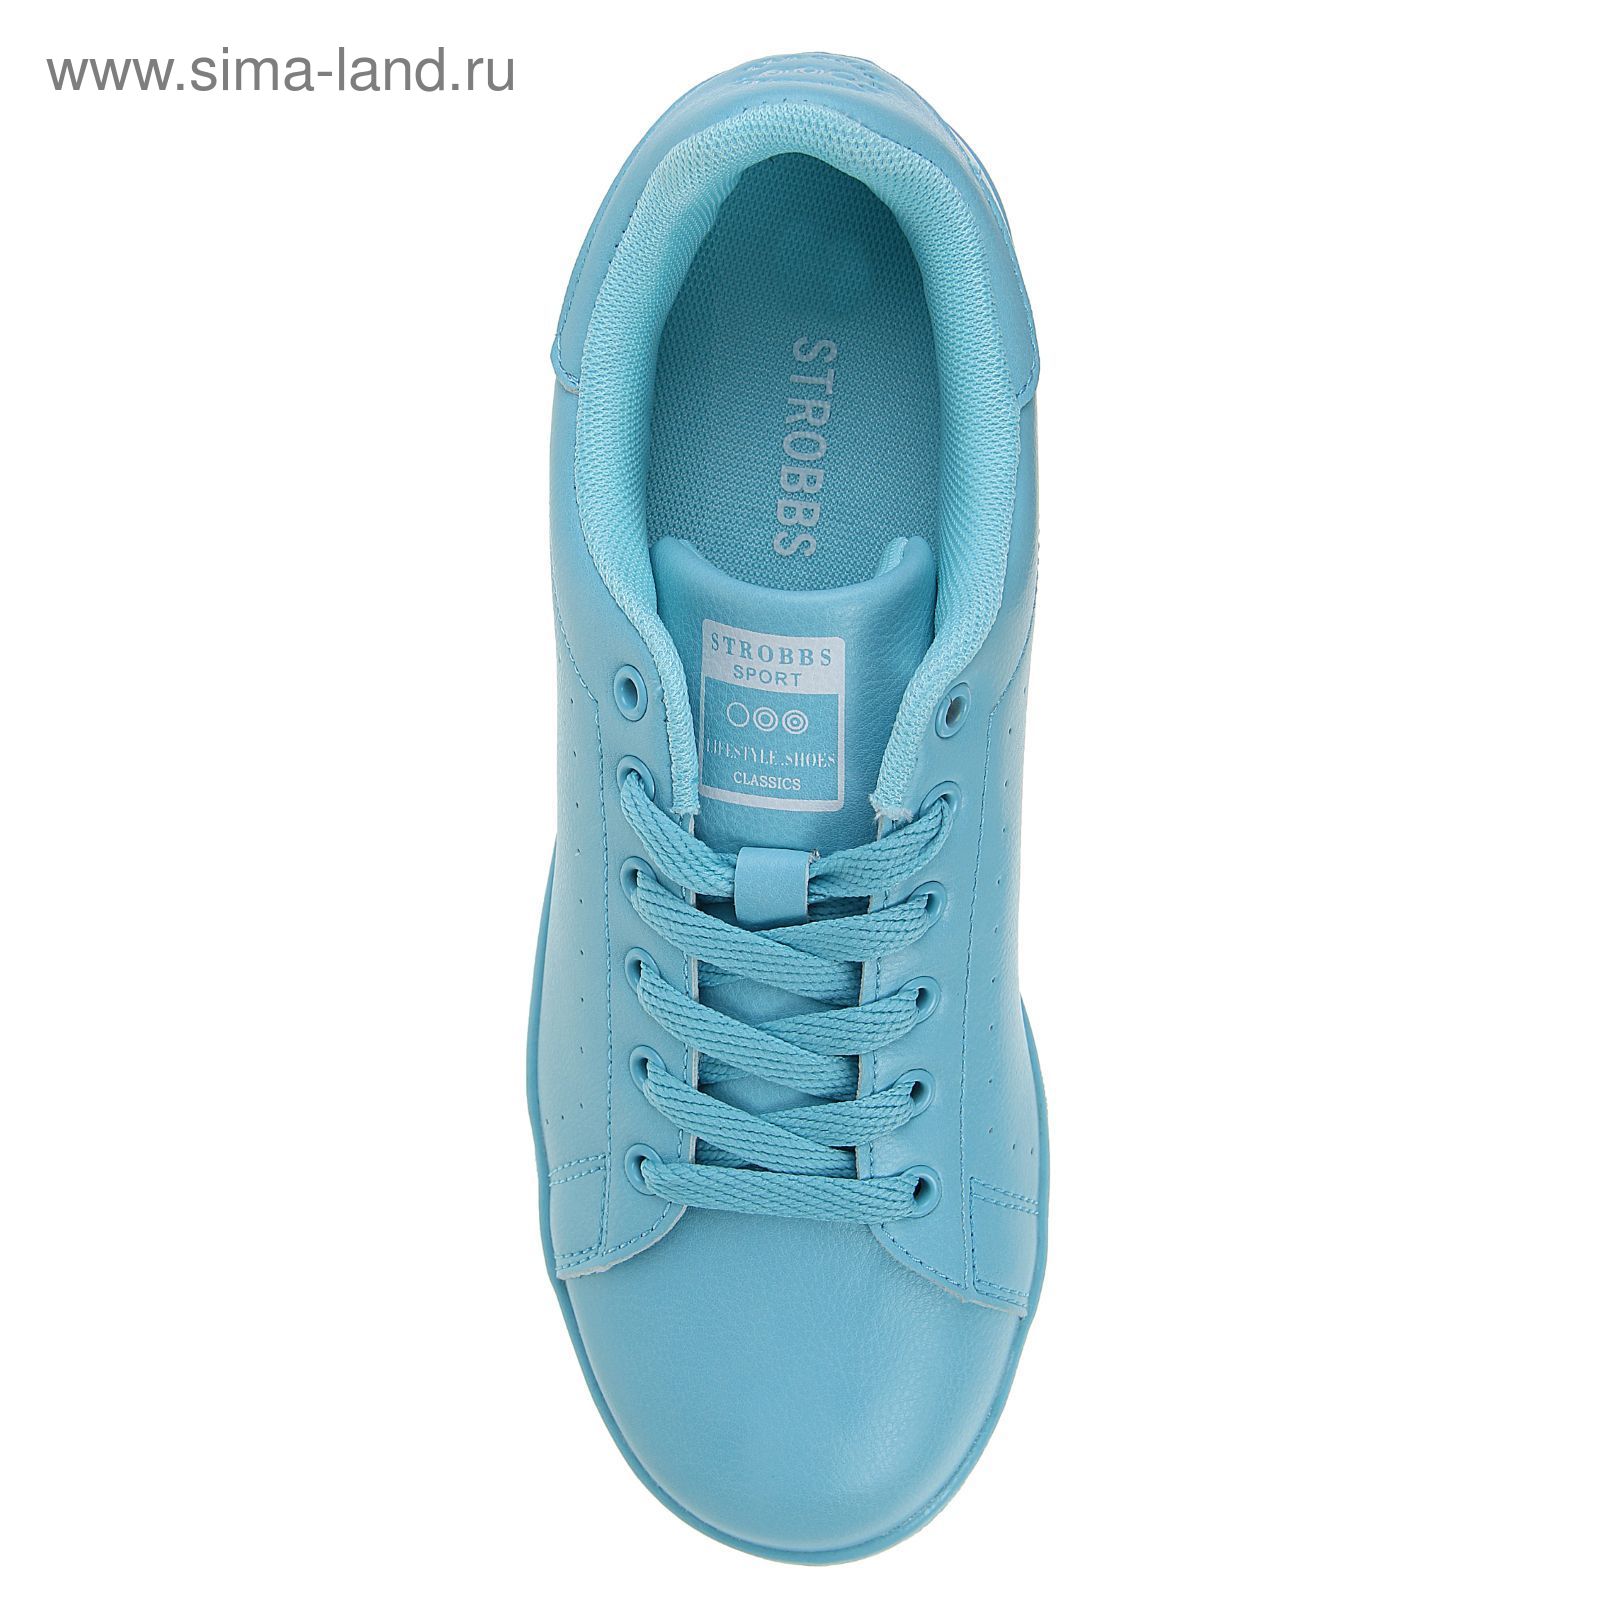 Кроссовки женские STROBBS, цвет голубой, размер 39 (арт. F6399-5)